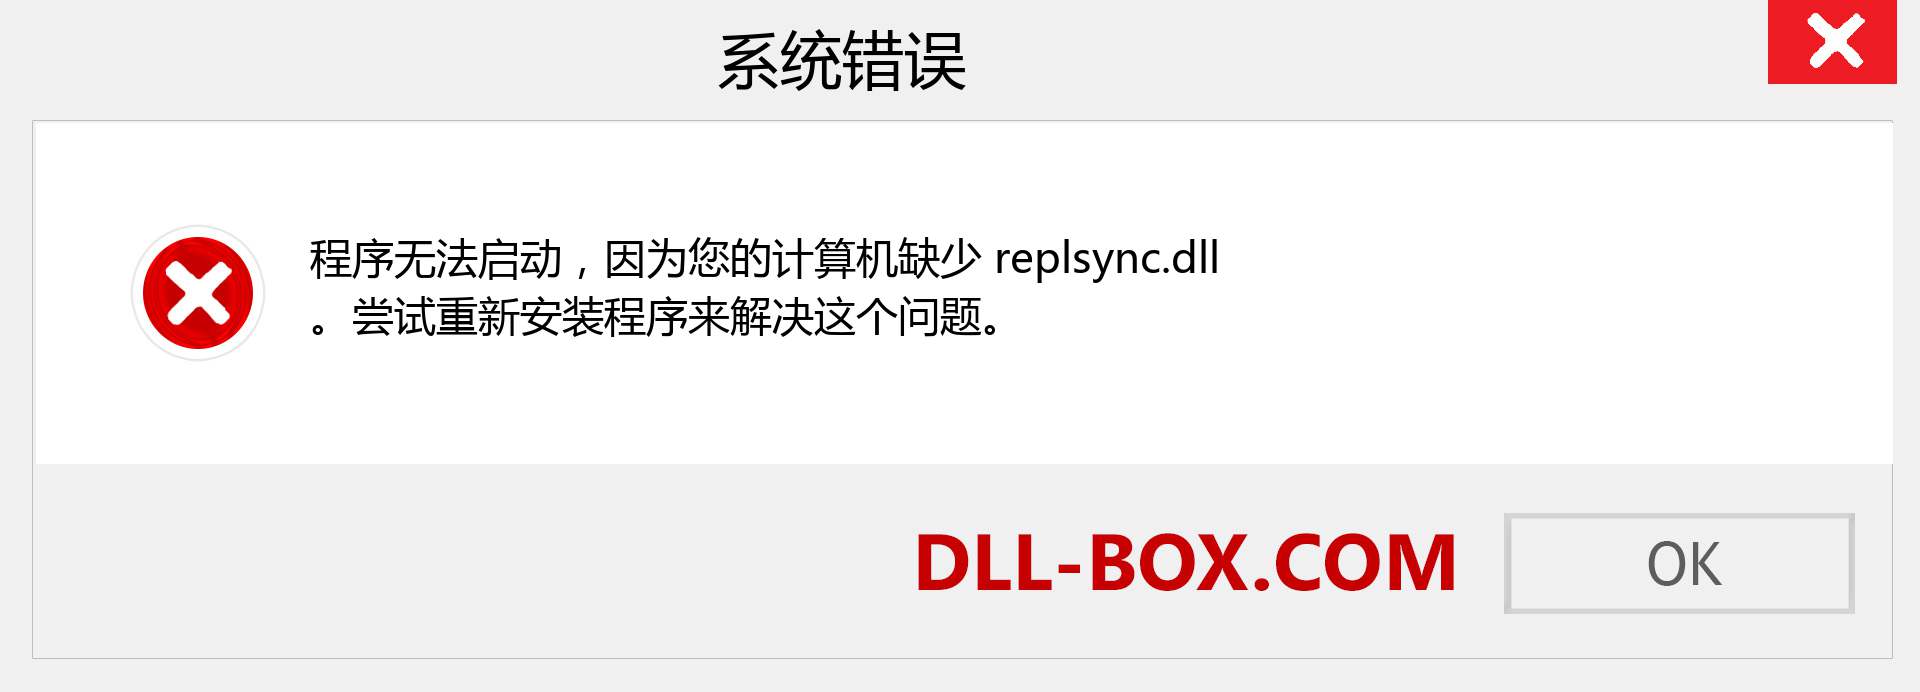 replsync.dll 文件丢失？。 适用于 Windows 7、8、10 的下载 - 修复 Windows、照片、图像上的 replsync dll 丢失错误